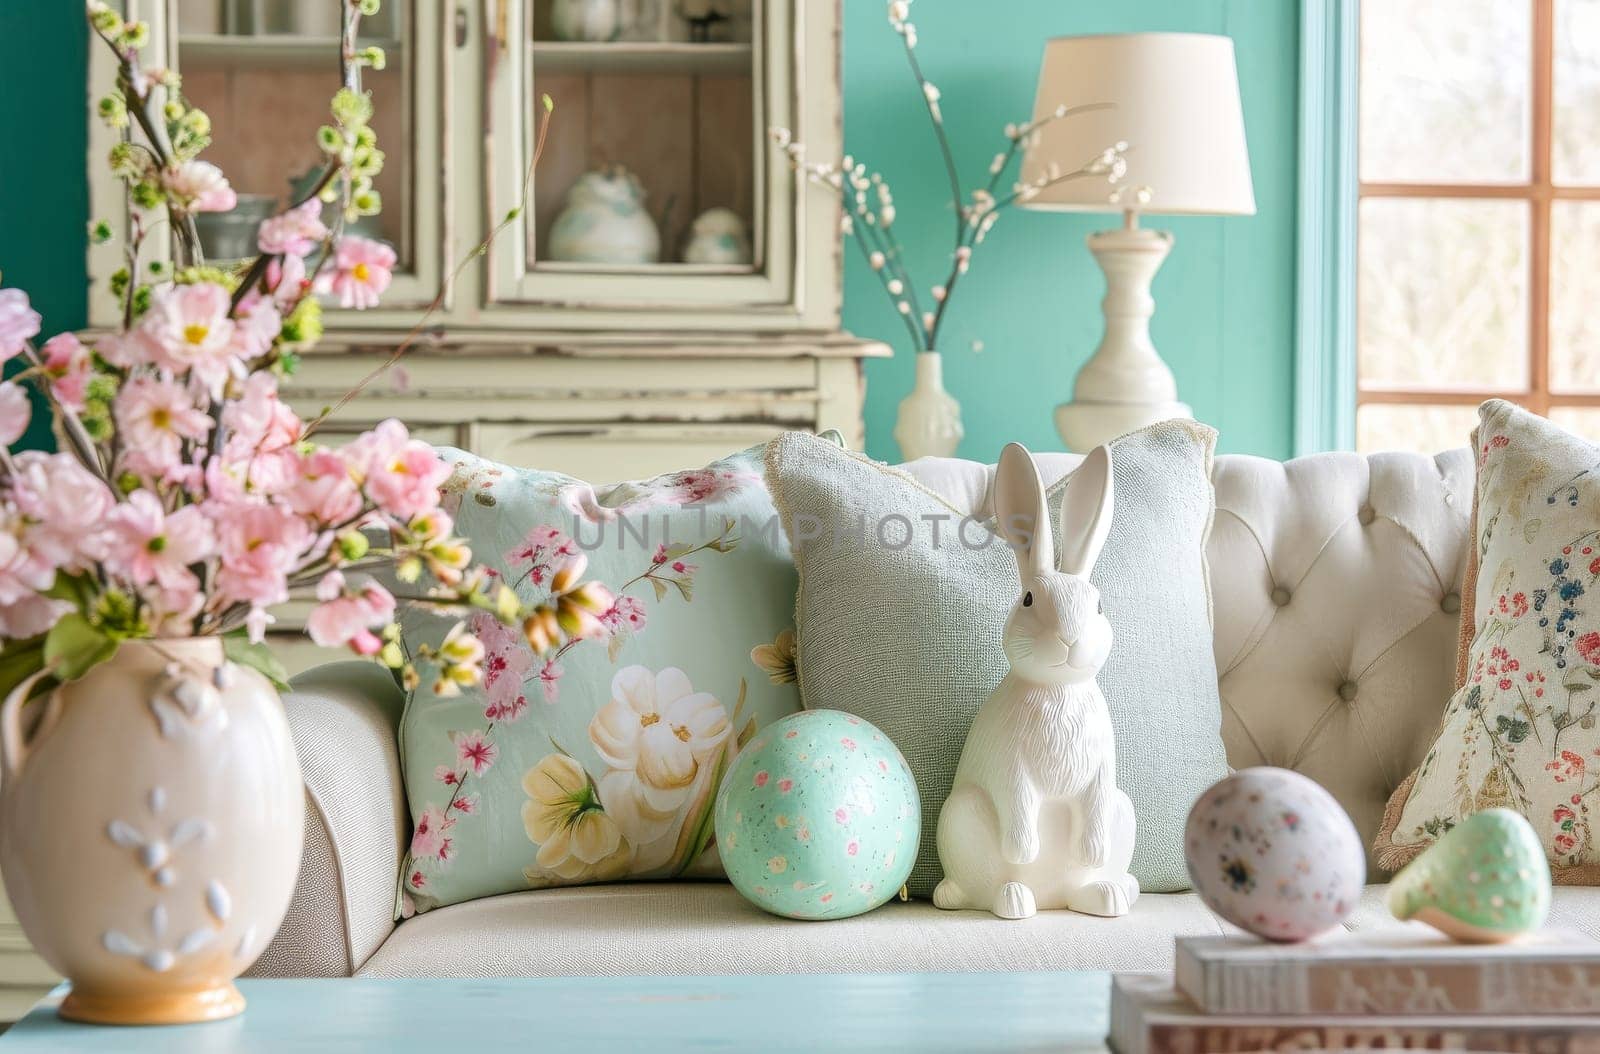 Springtime Easter interior decor by gcm